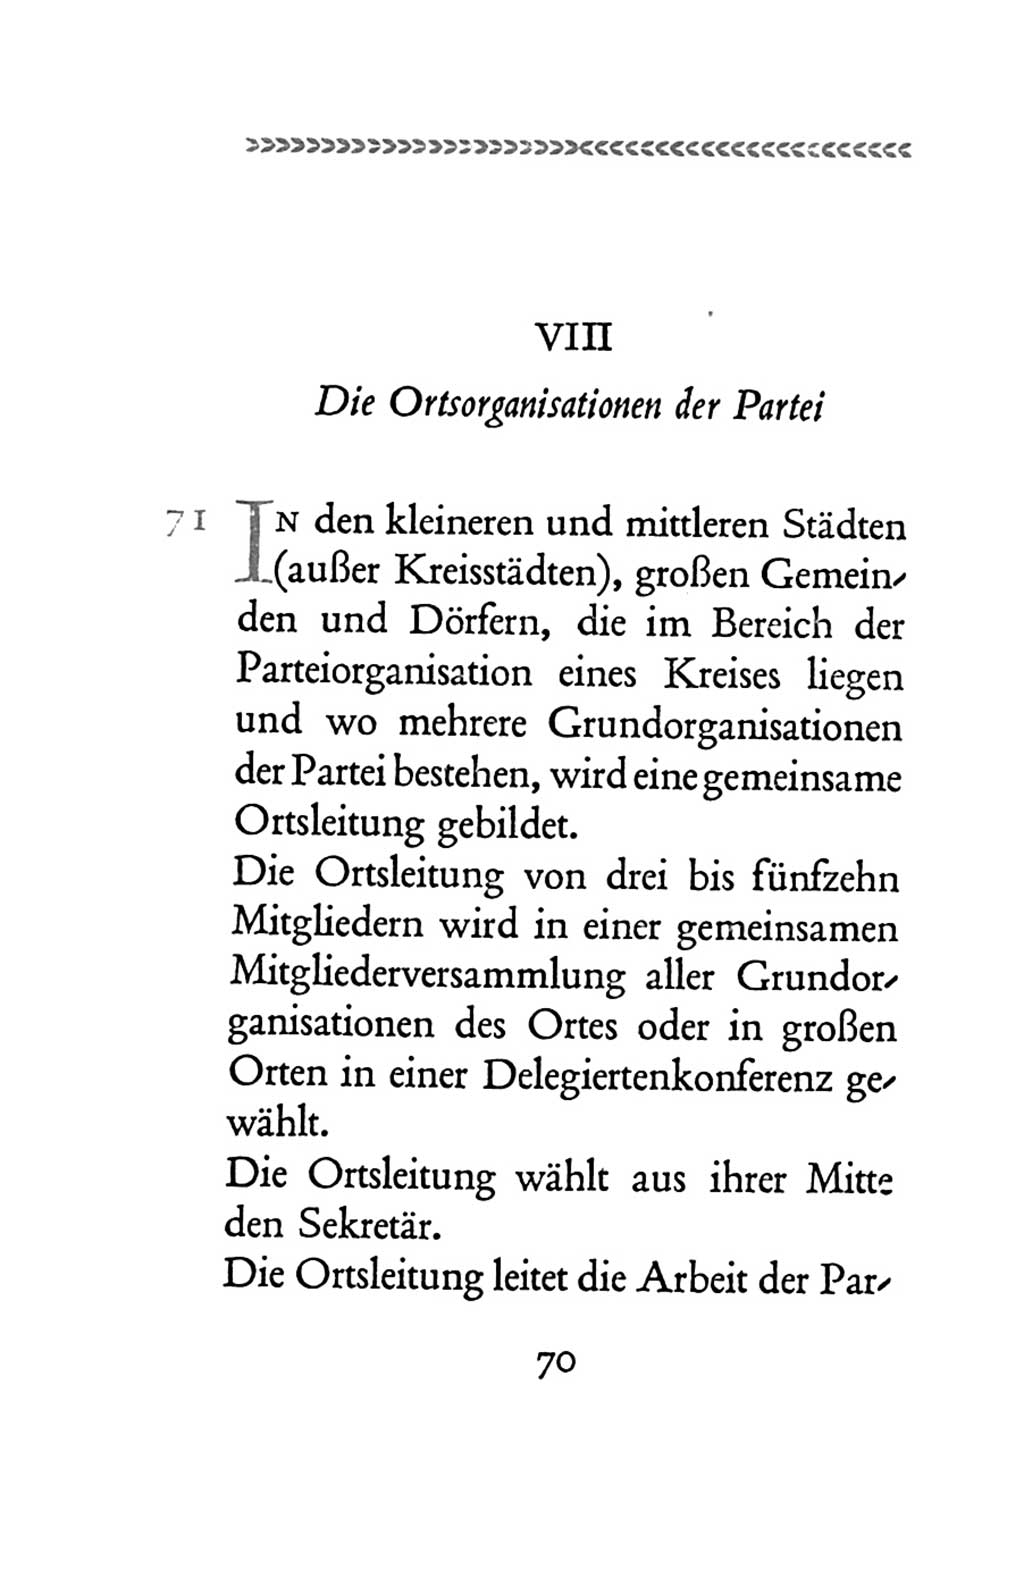 Statut der Sozialistischen Einheitspartei Deutschlands (SED) 1954, Seite 70